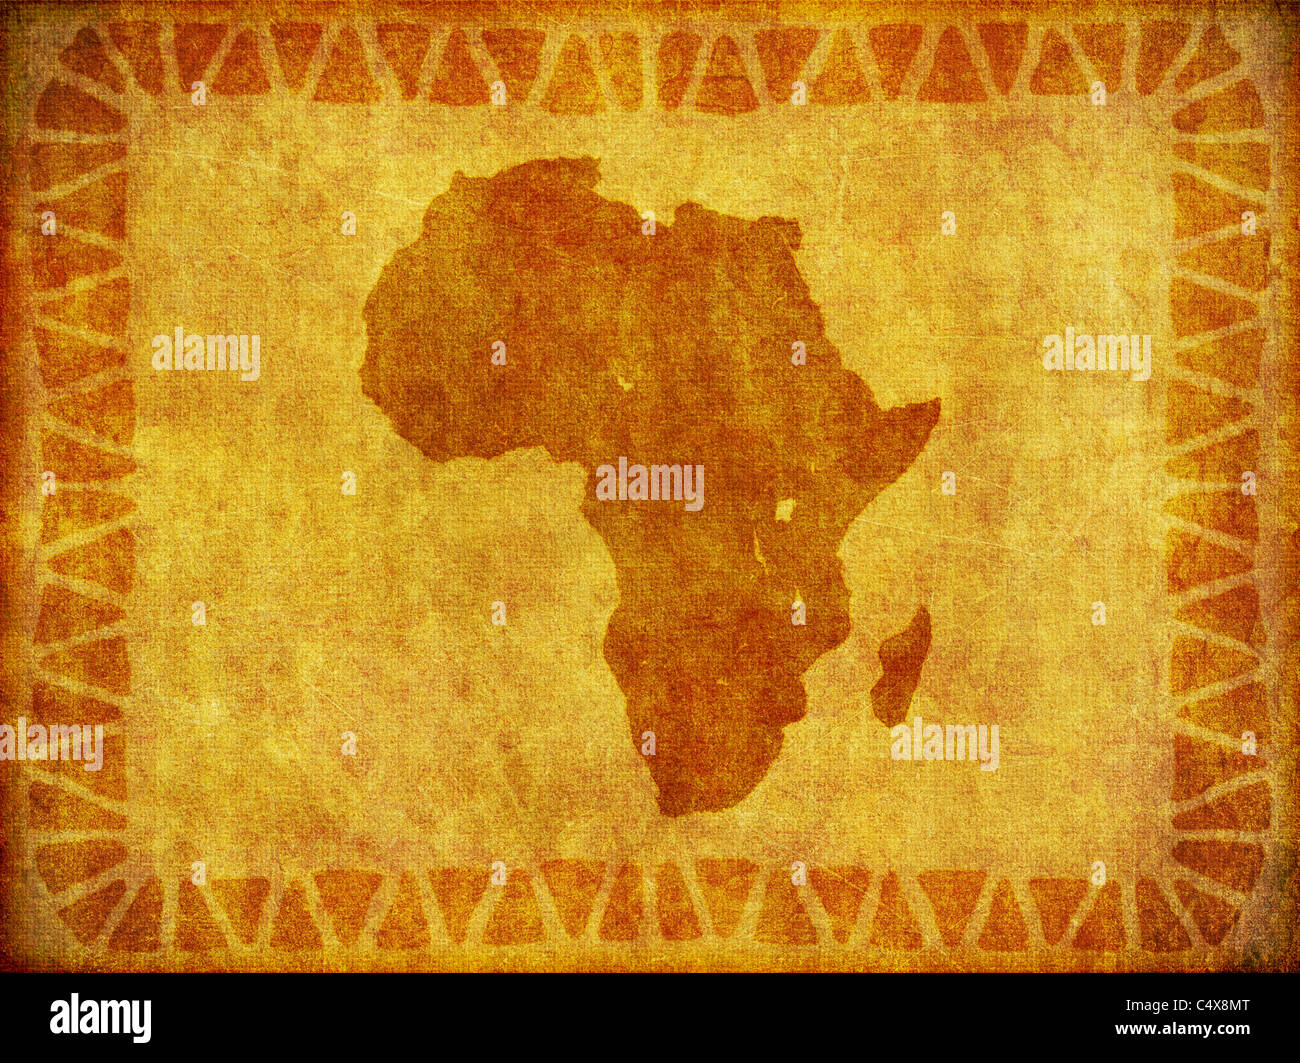 Un motif du continent africain imprimé sur un morceau de vieux matériel. Banque D'Images